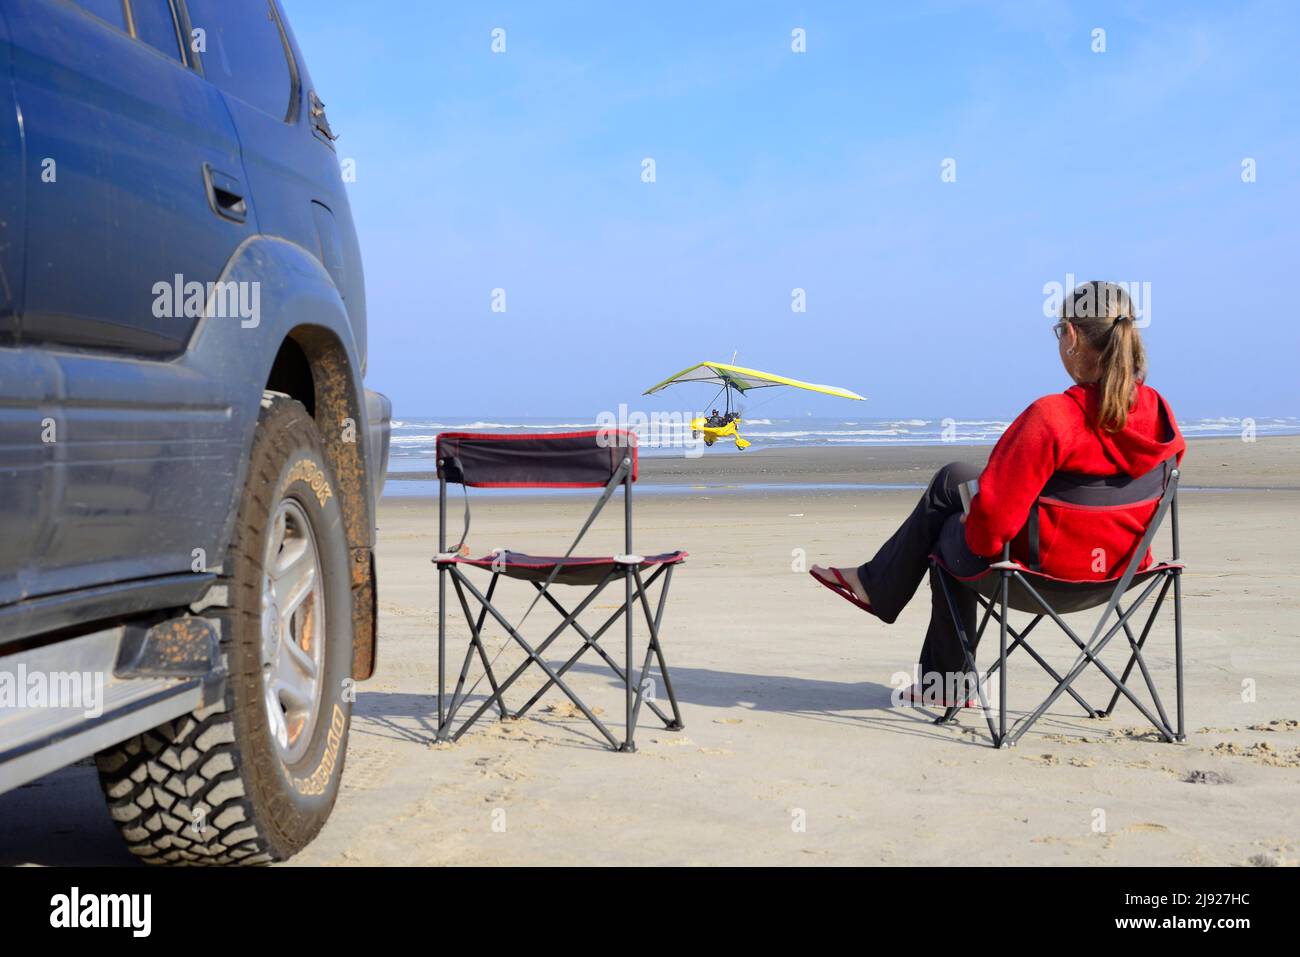 Mujer sentada en silla de camping junto a un vehículo todoterreno en la playa viendo un avión ligero despegando, ULM, Torres, Rio Grande do Sul, Brasil Foto de stock